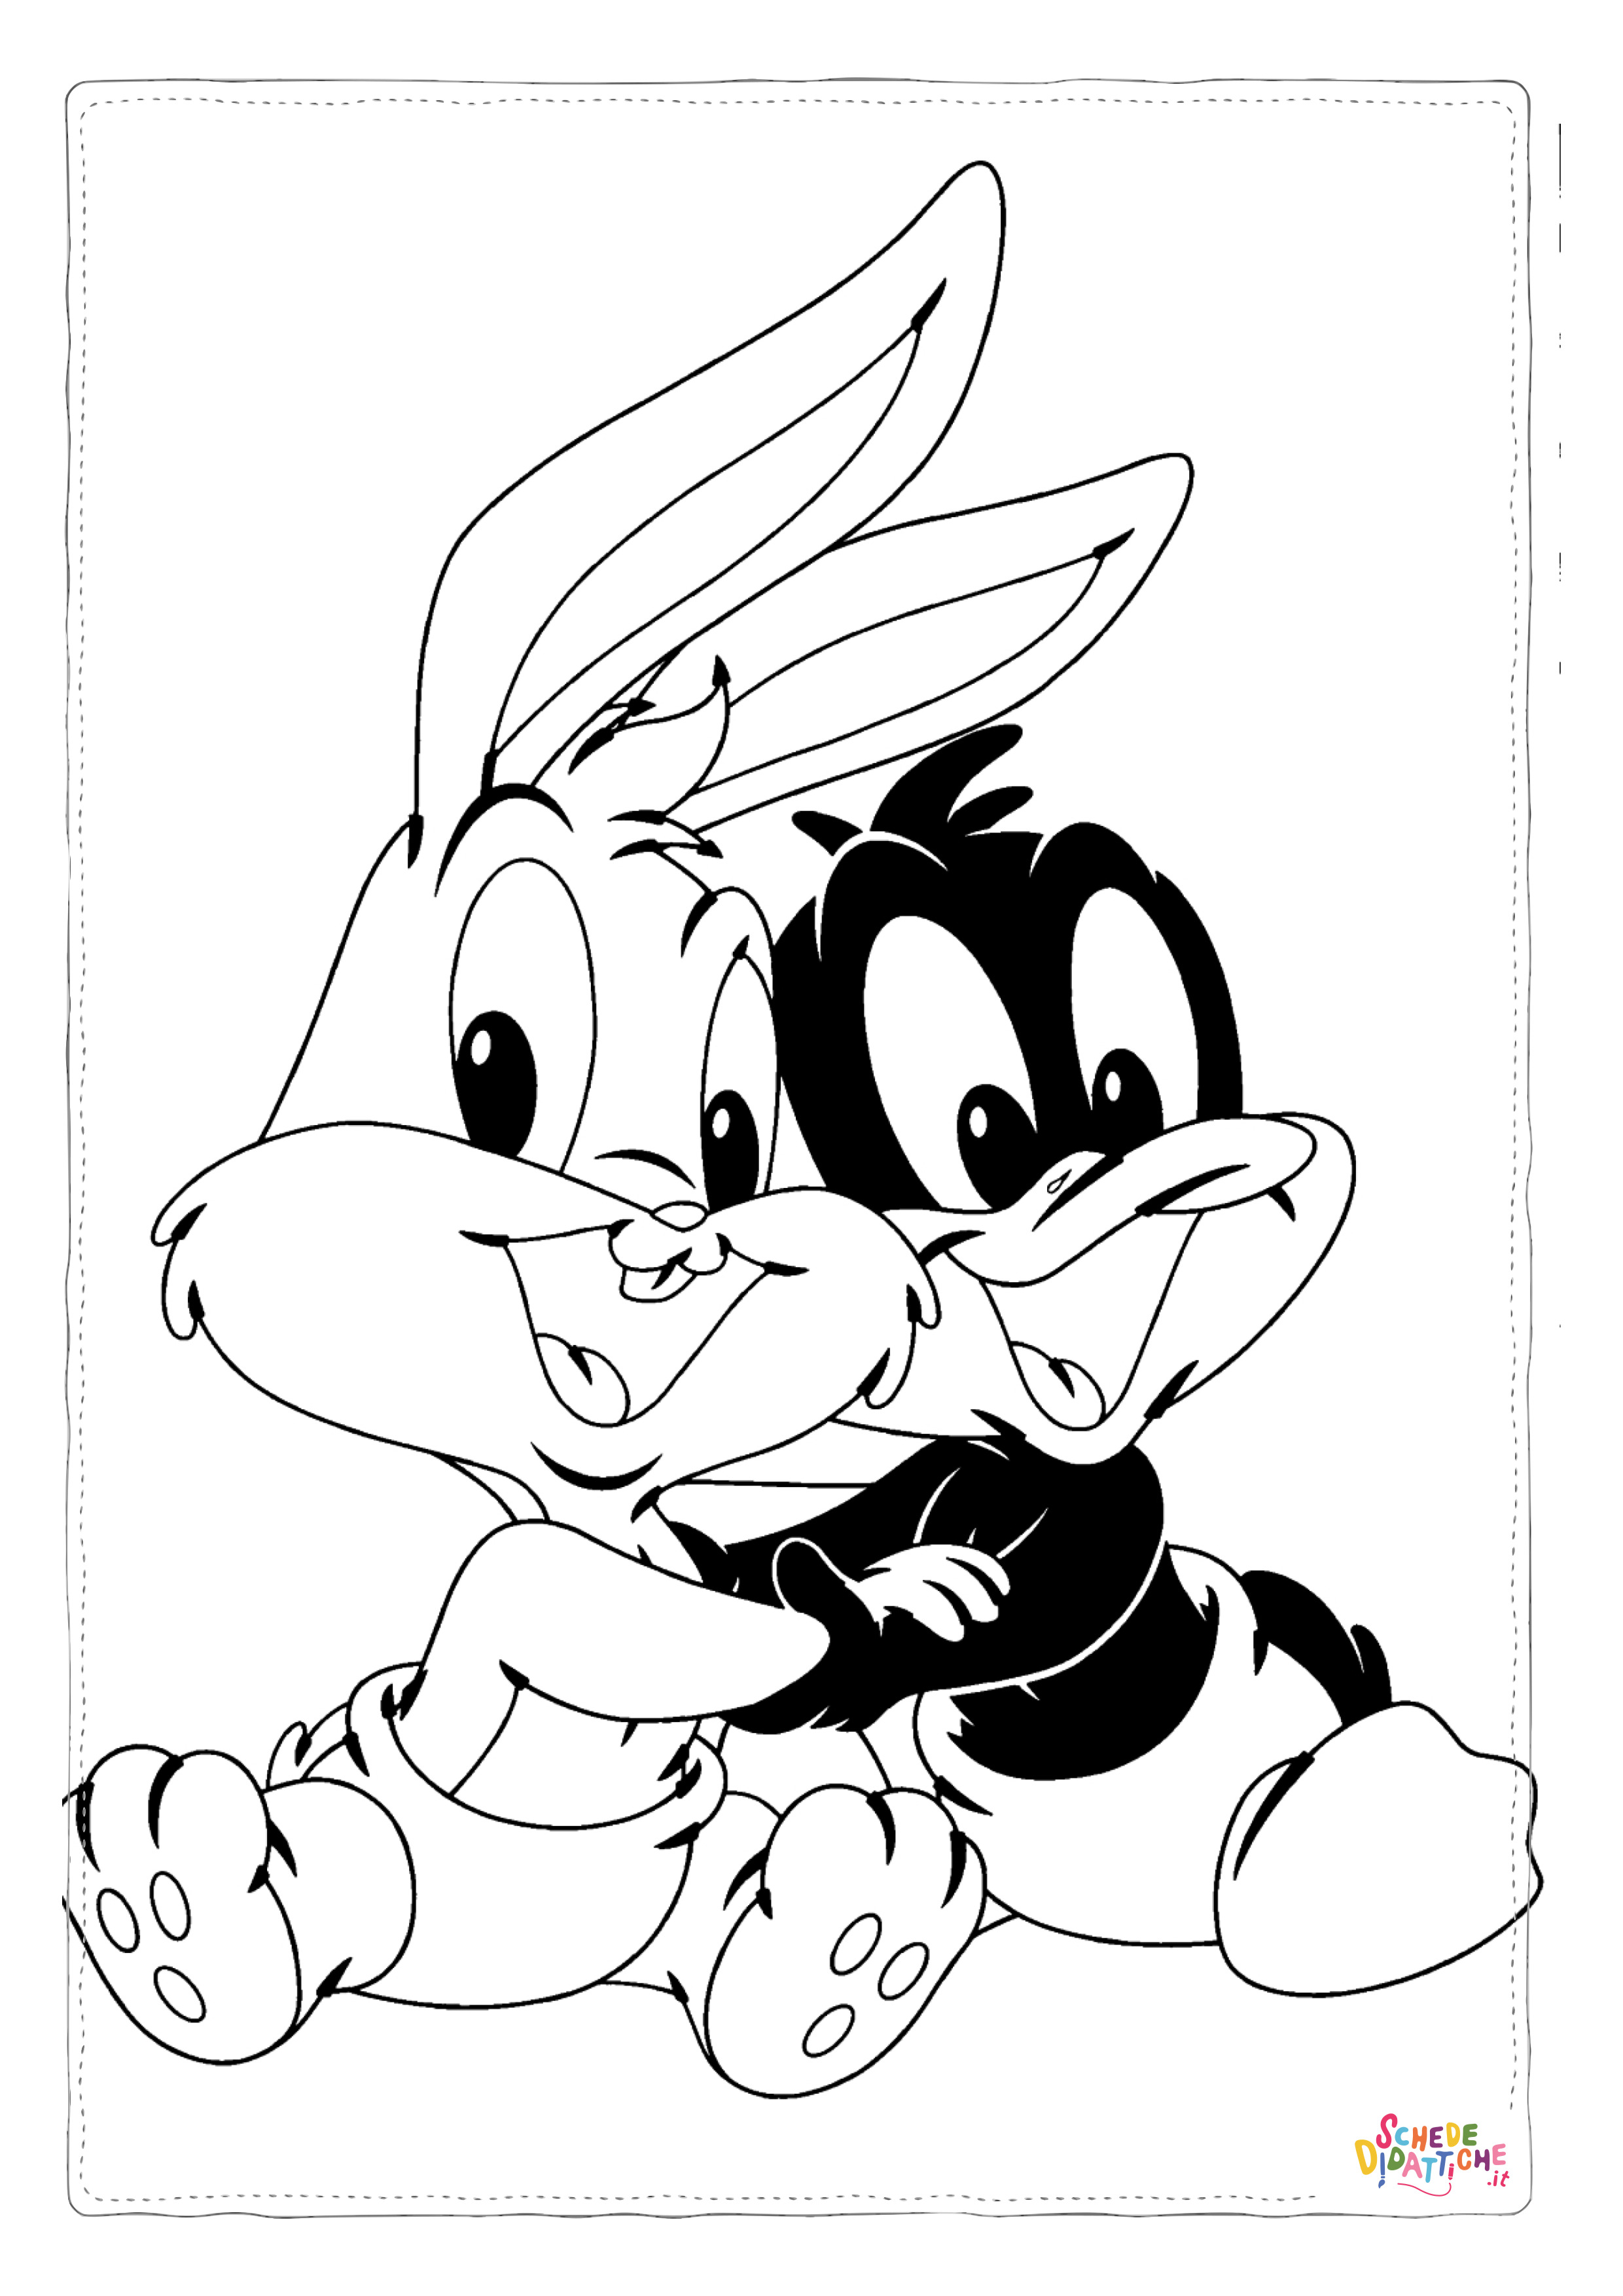 Disegno di Bugs Bunny da stampare e colorare 13